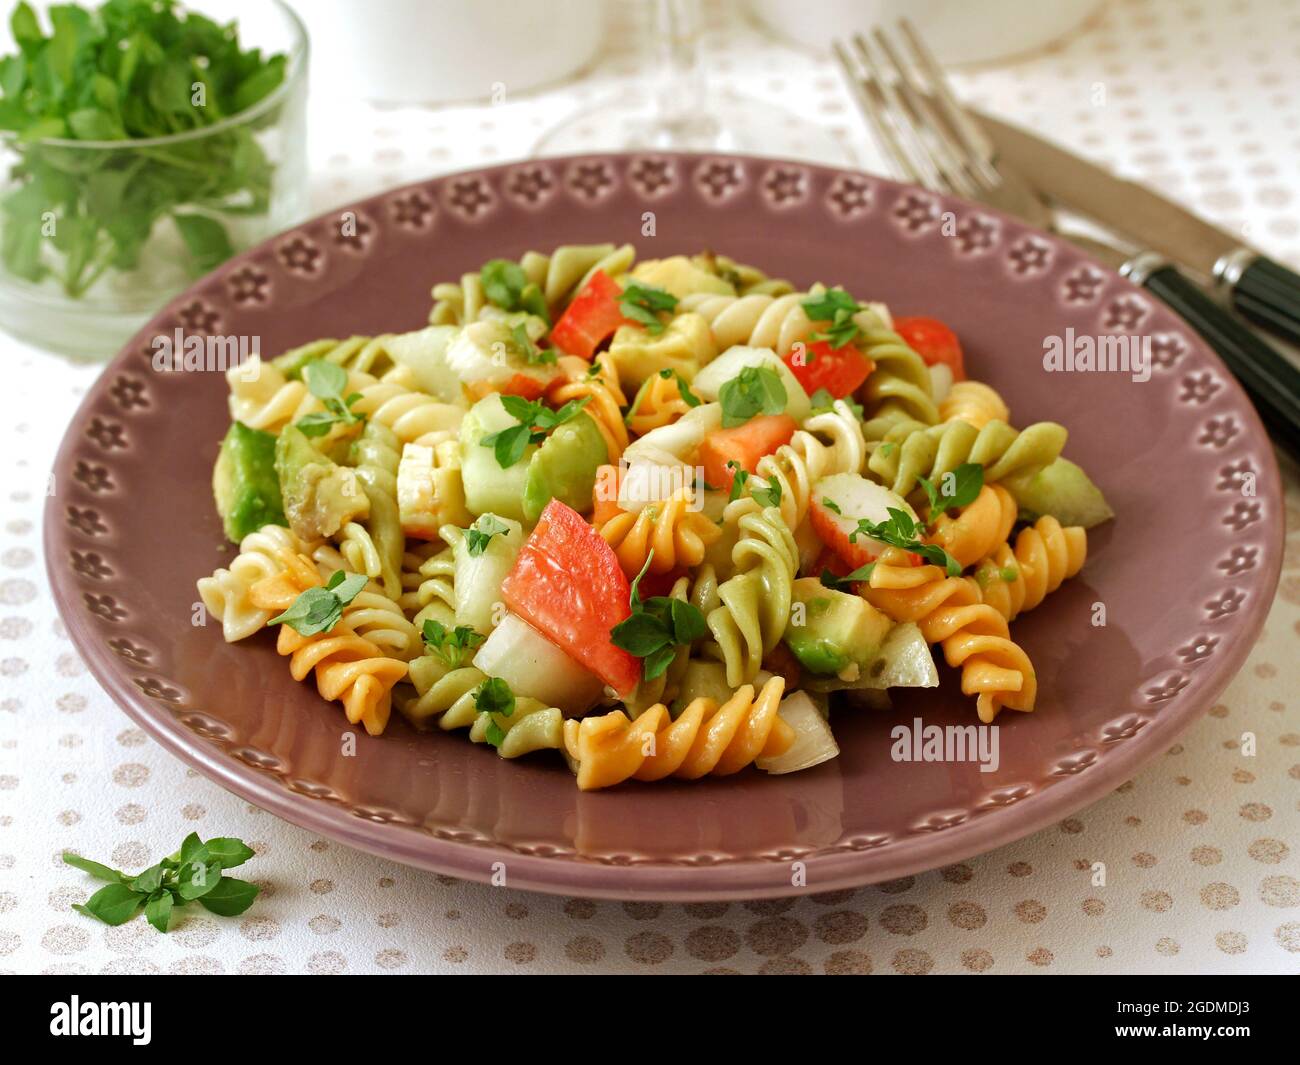 Insalata di pasta. Spirali con verdure, surimi e avocado. Con foglie di basilico come condimento. Foto Stock